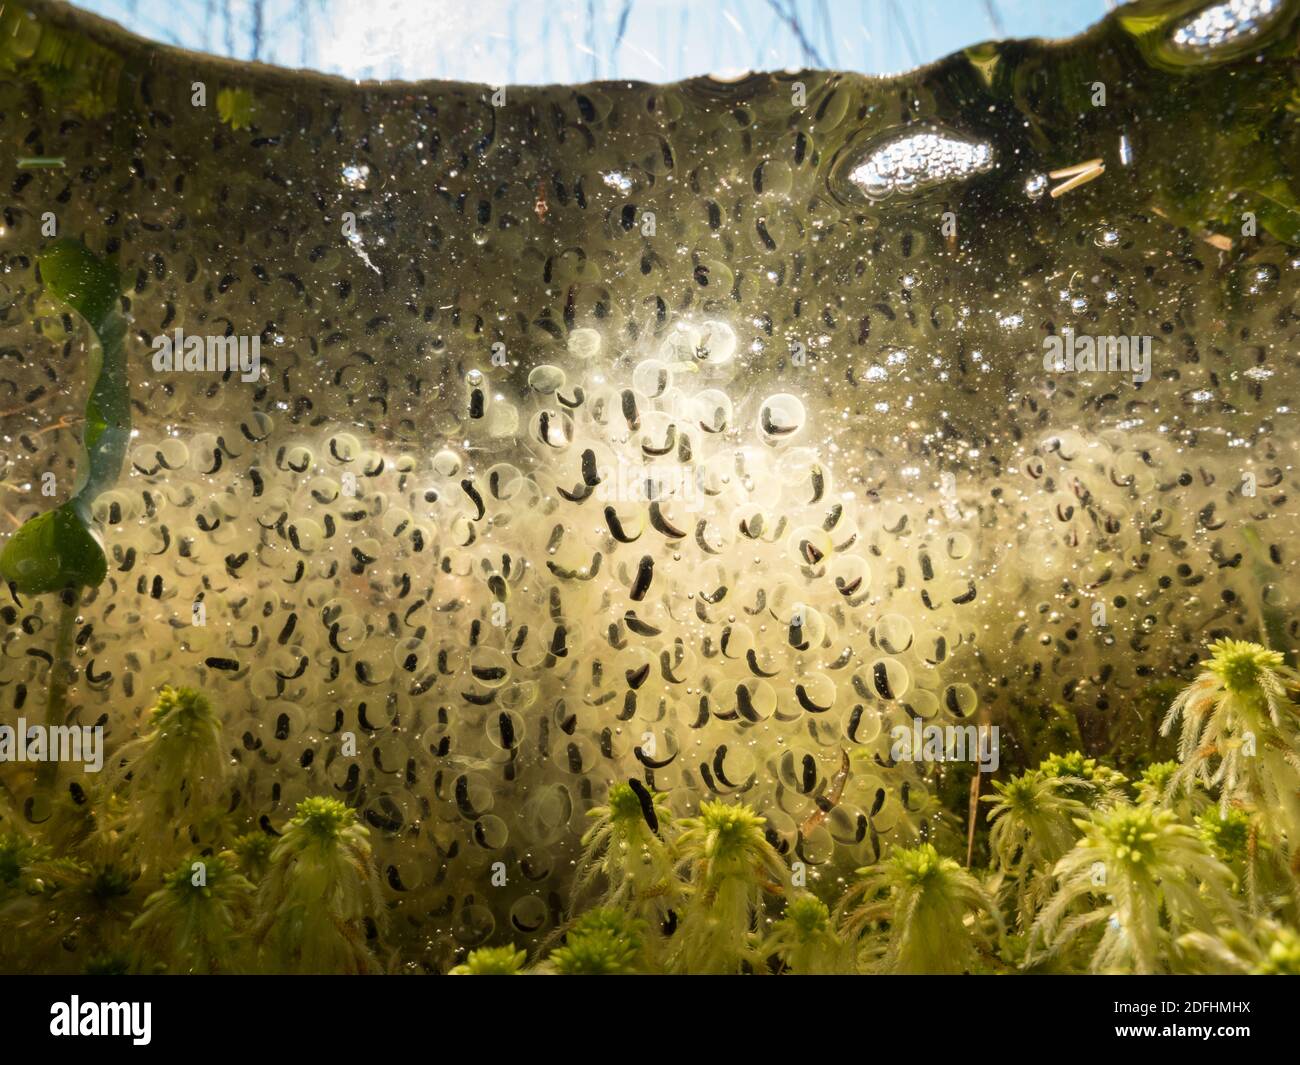 Moor frog eggs underwater over sphagnum moss Stock Photo